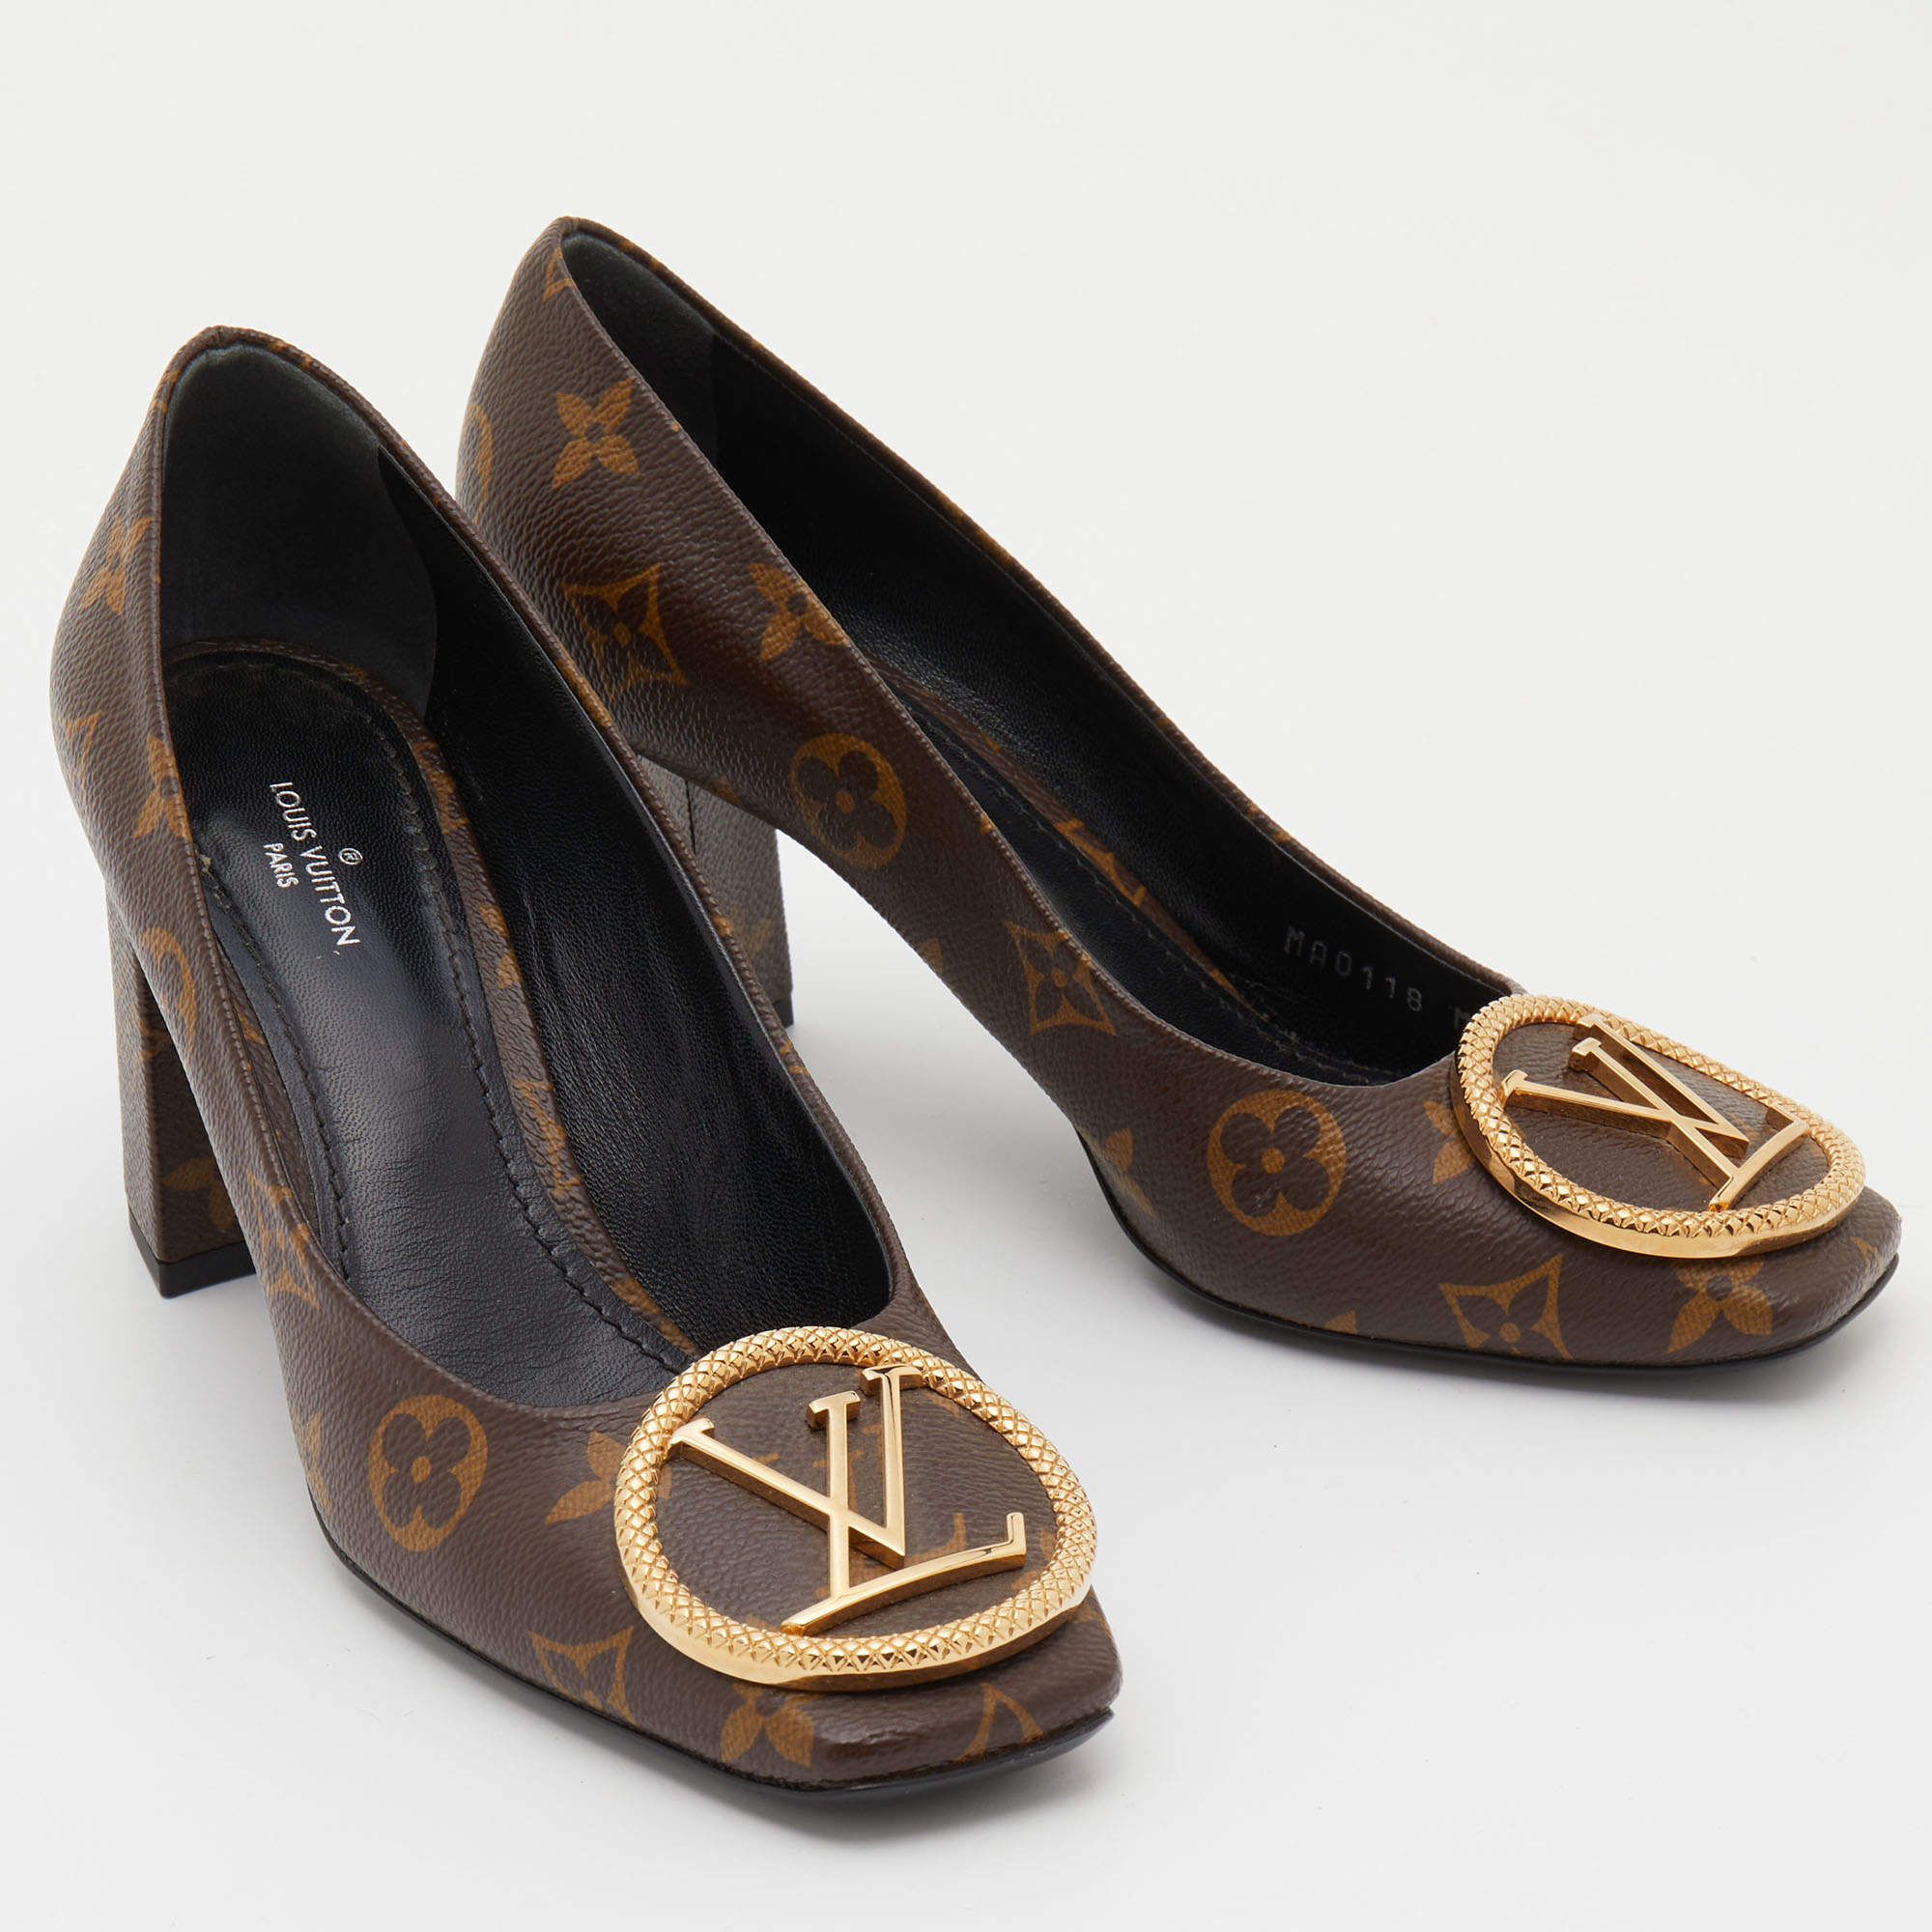 Madeleine heels Louis Vuitton Burgundy size 5.5 UK in Suede - 32736626